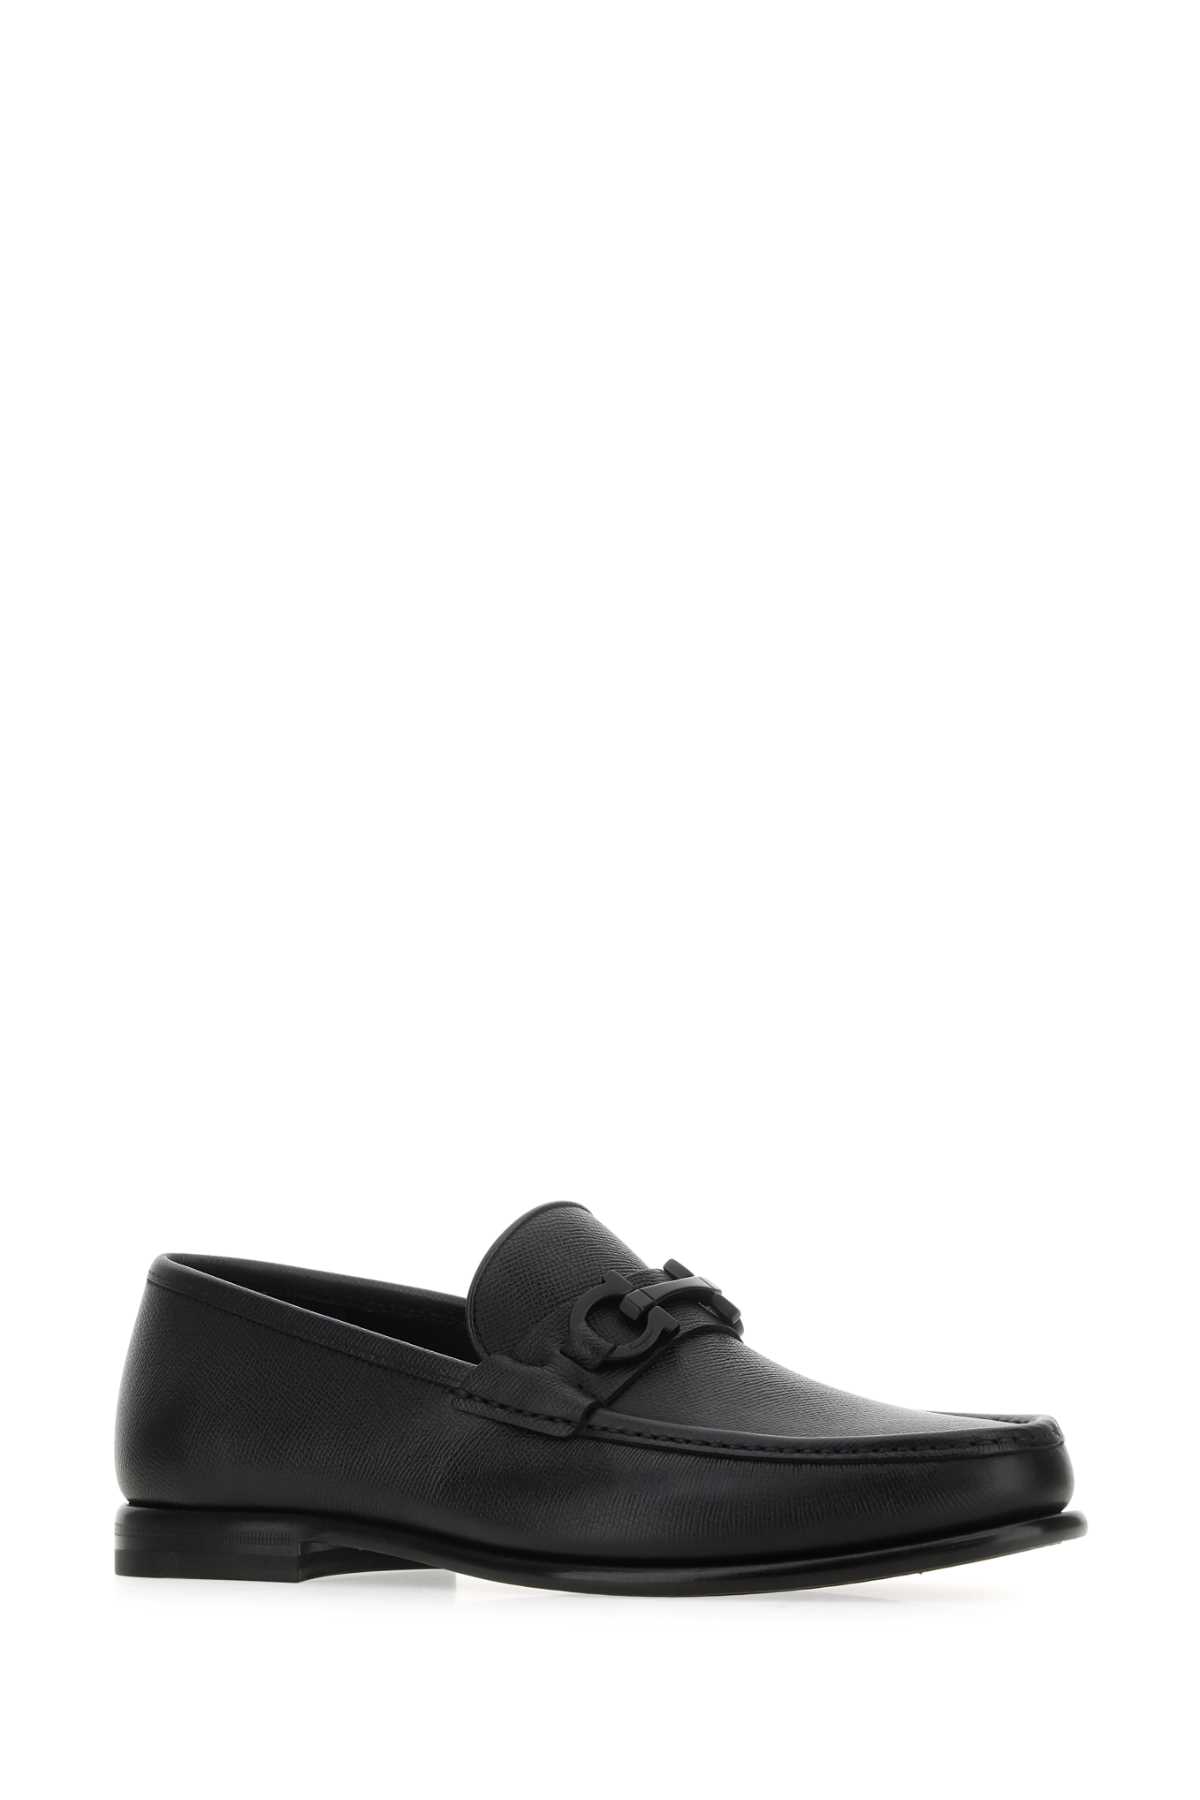 Ferragamo Black Leather Loafers In Nero